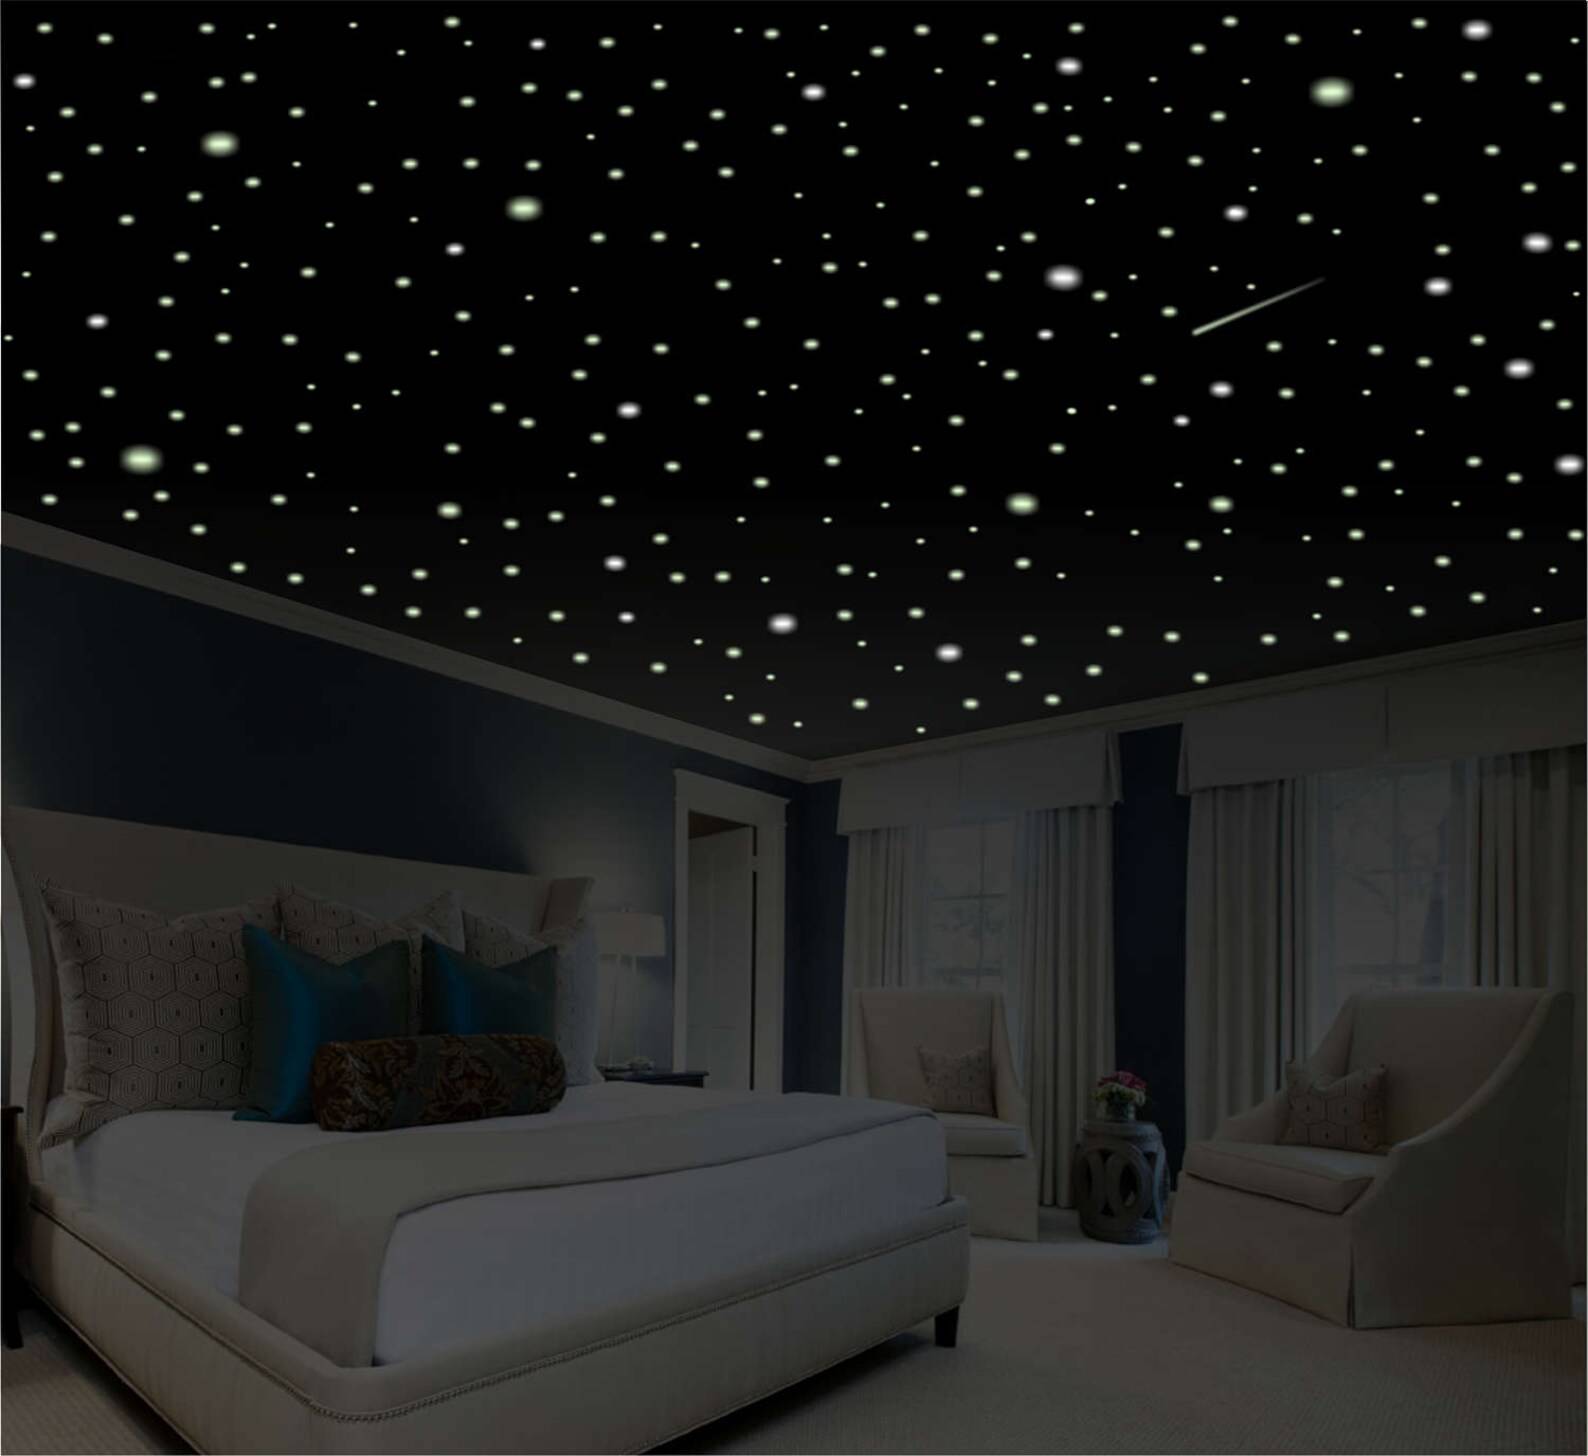 Как сделать звездное небо дома своими руками - устройство проекции и системы конструкции, какой эффект светодиодного потолка, преимущества 3d, детали на фото +видео